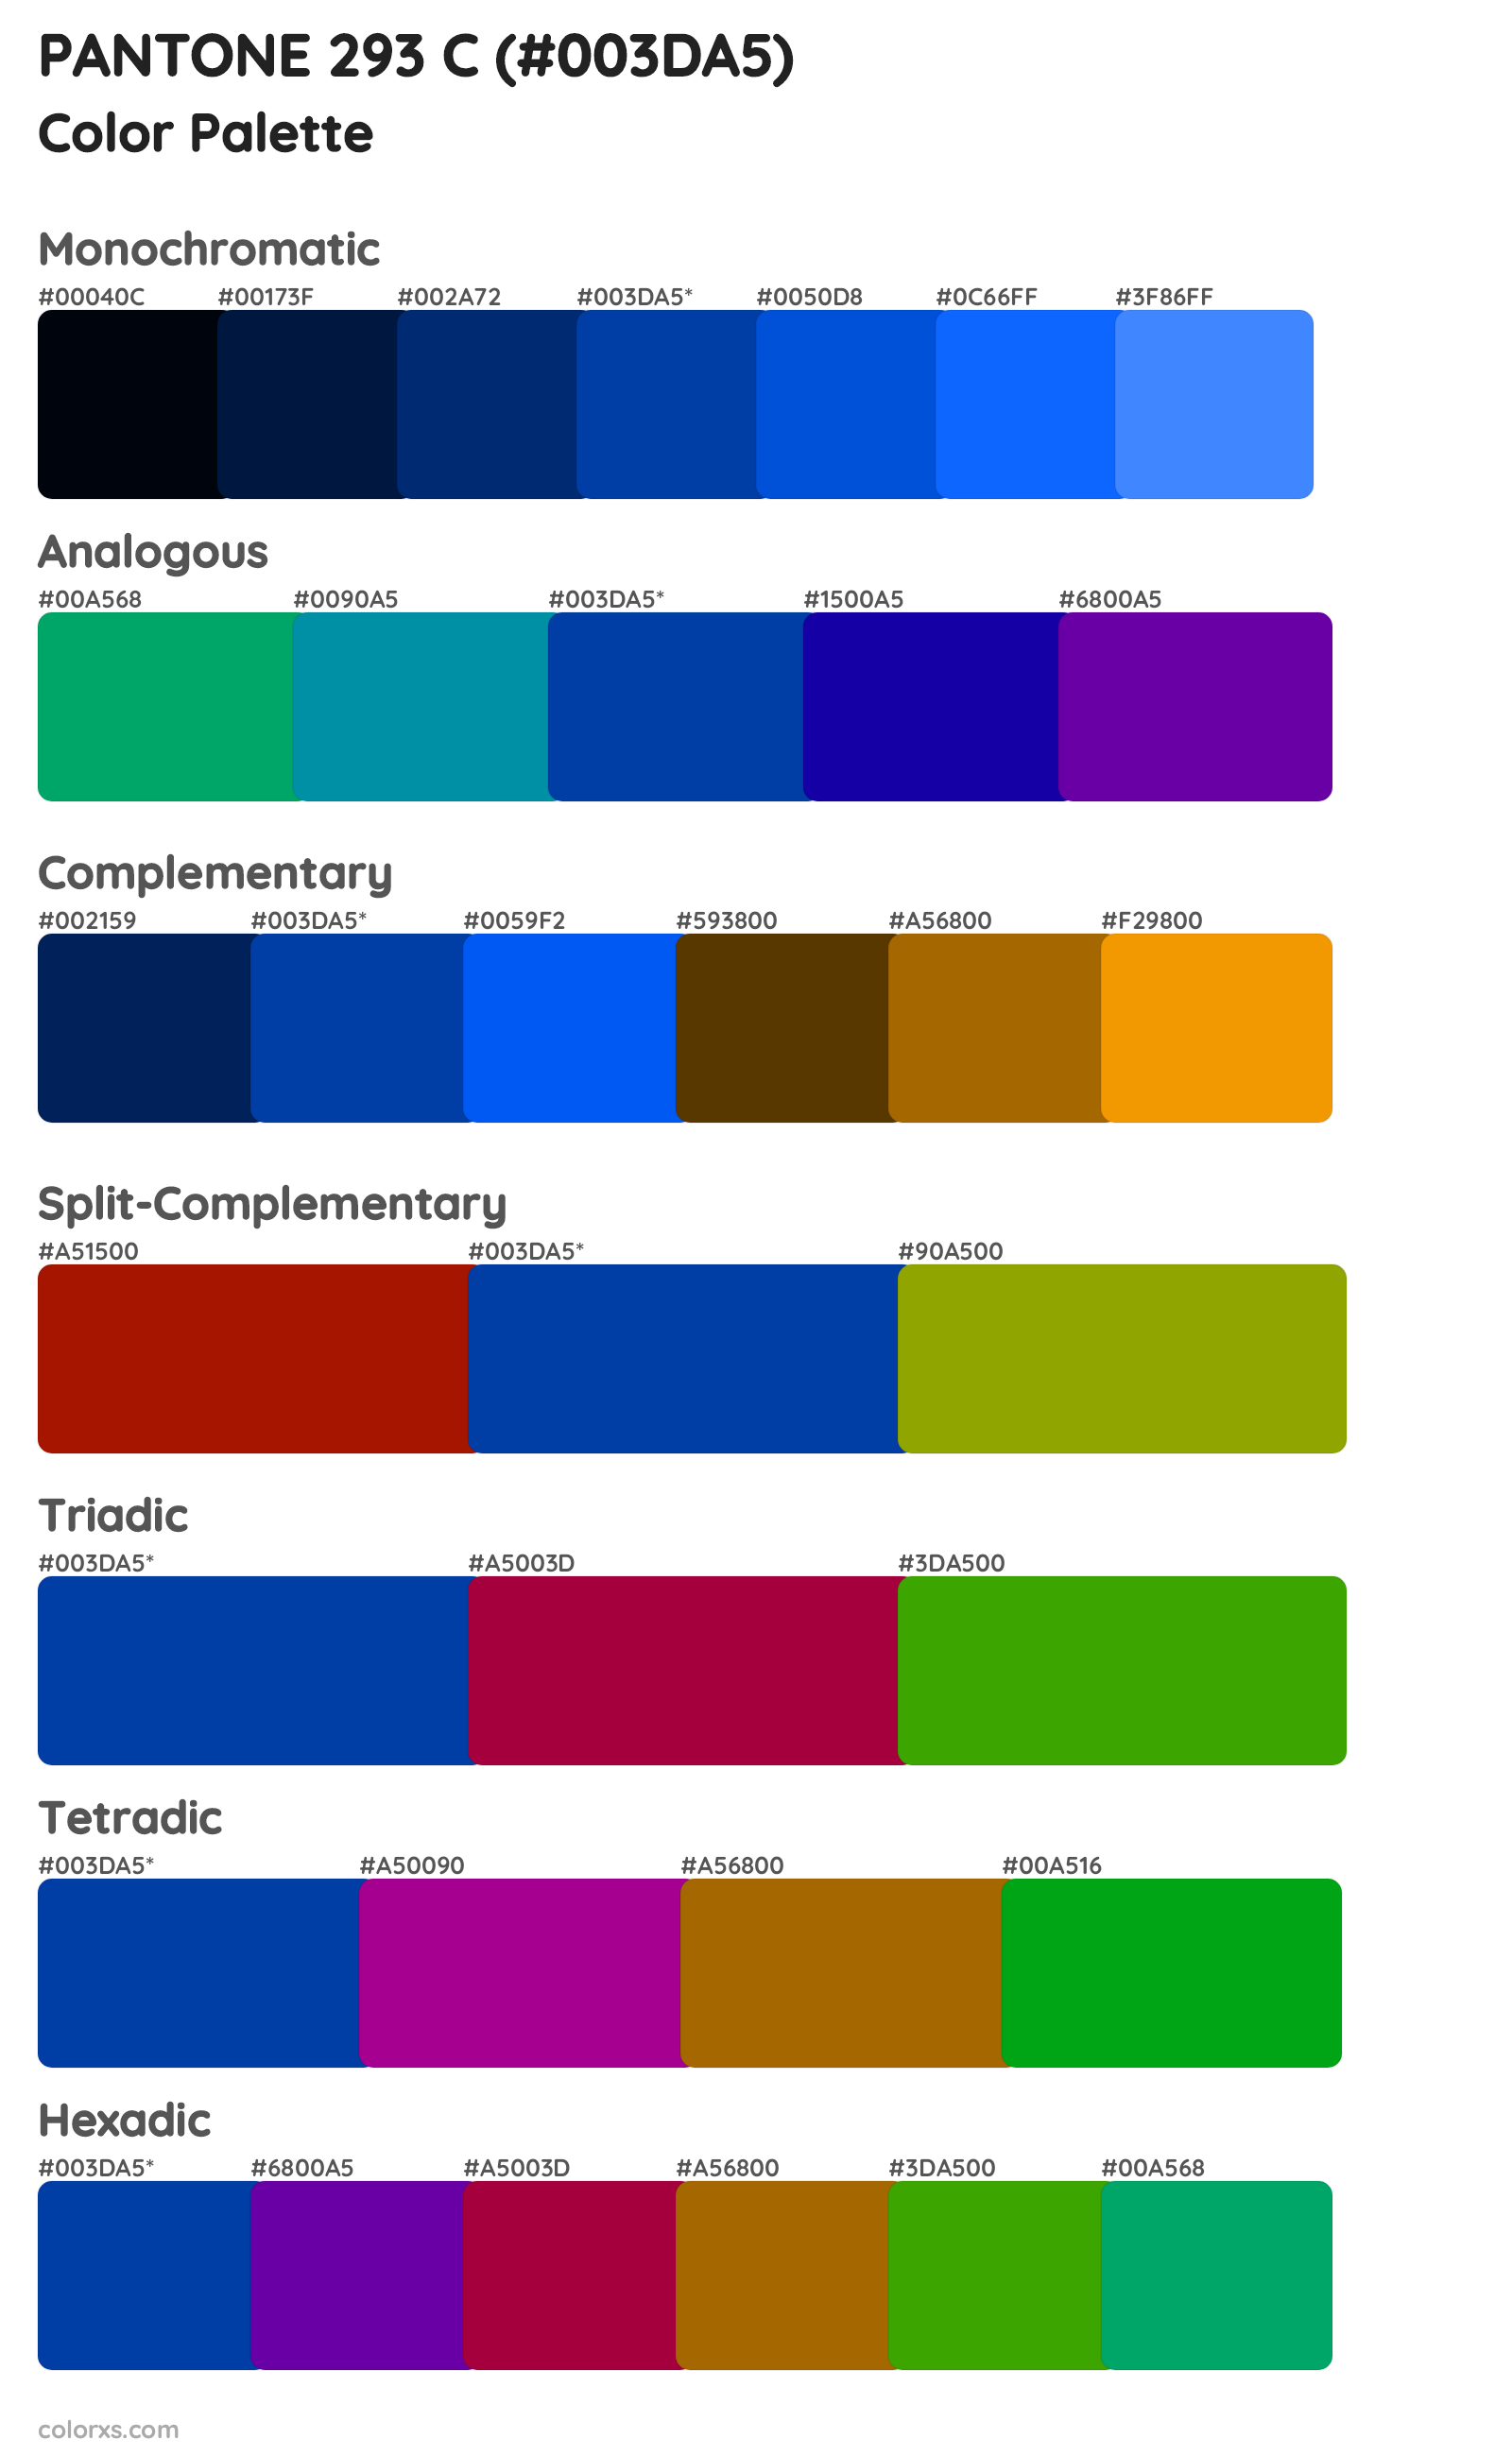 PANTONE 293 C Color Scheme Palettes